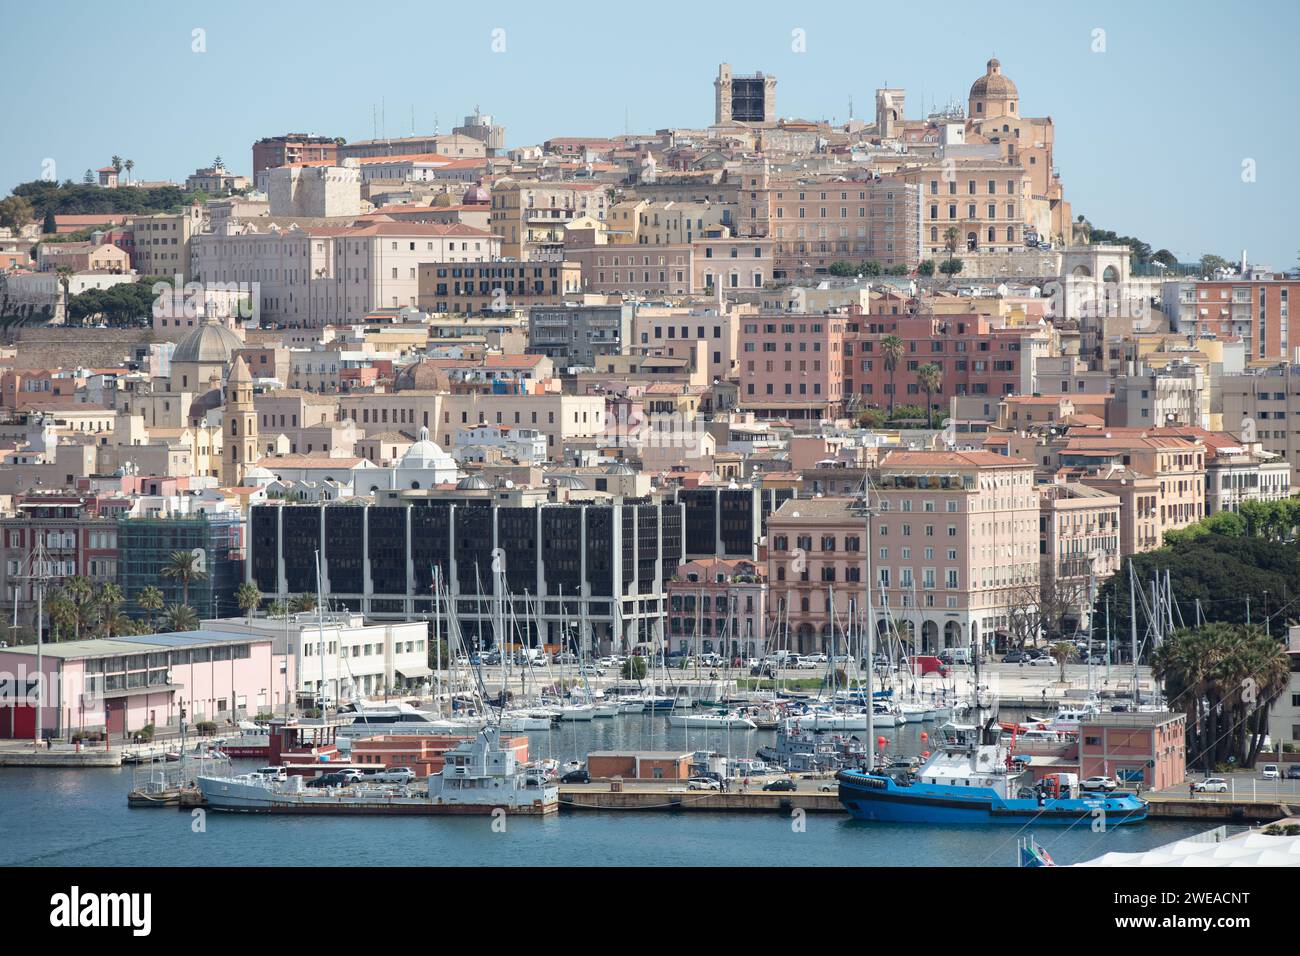 Centro histórico de Cagliari, capital de la región de Cerdeña, visto desde el puerto en un día soleado Foto de stock